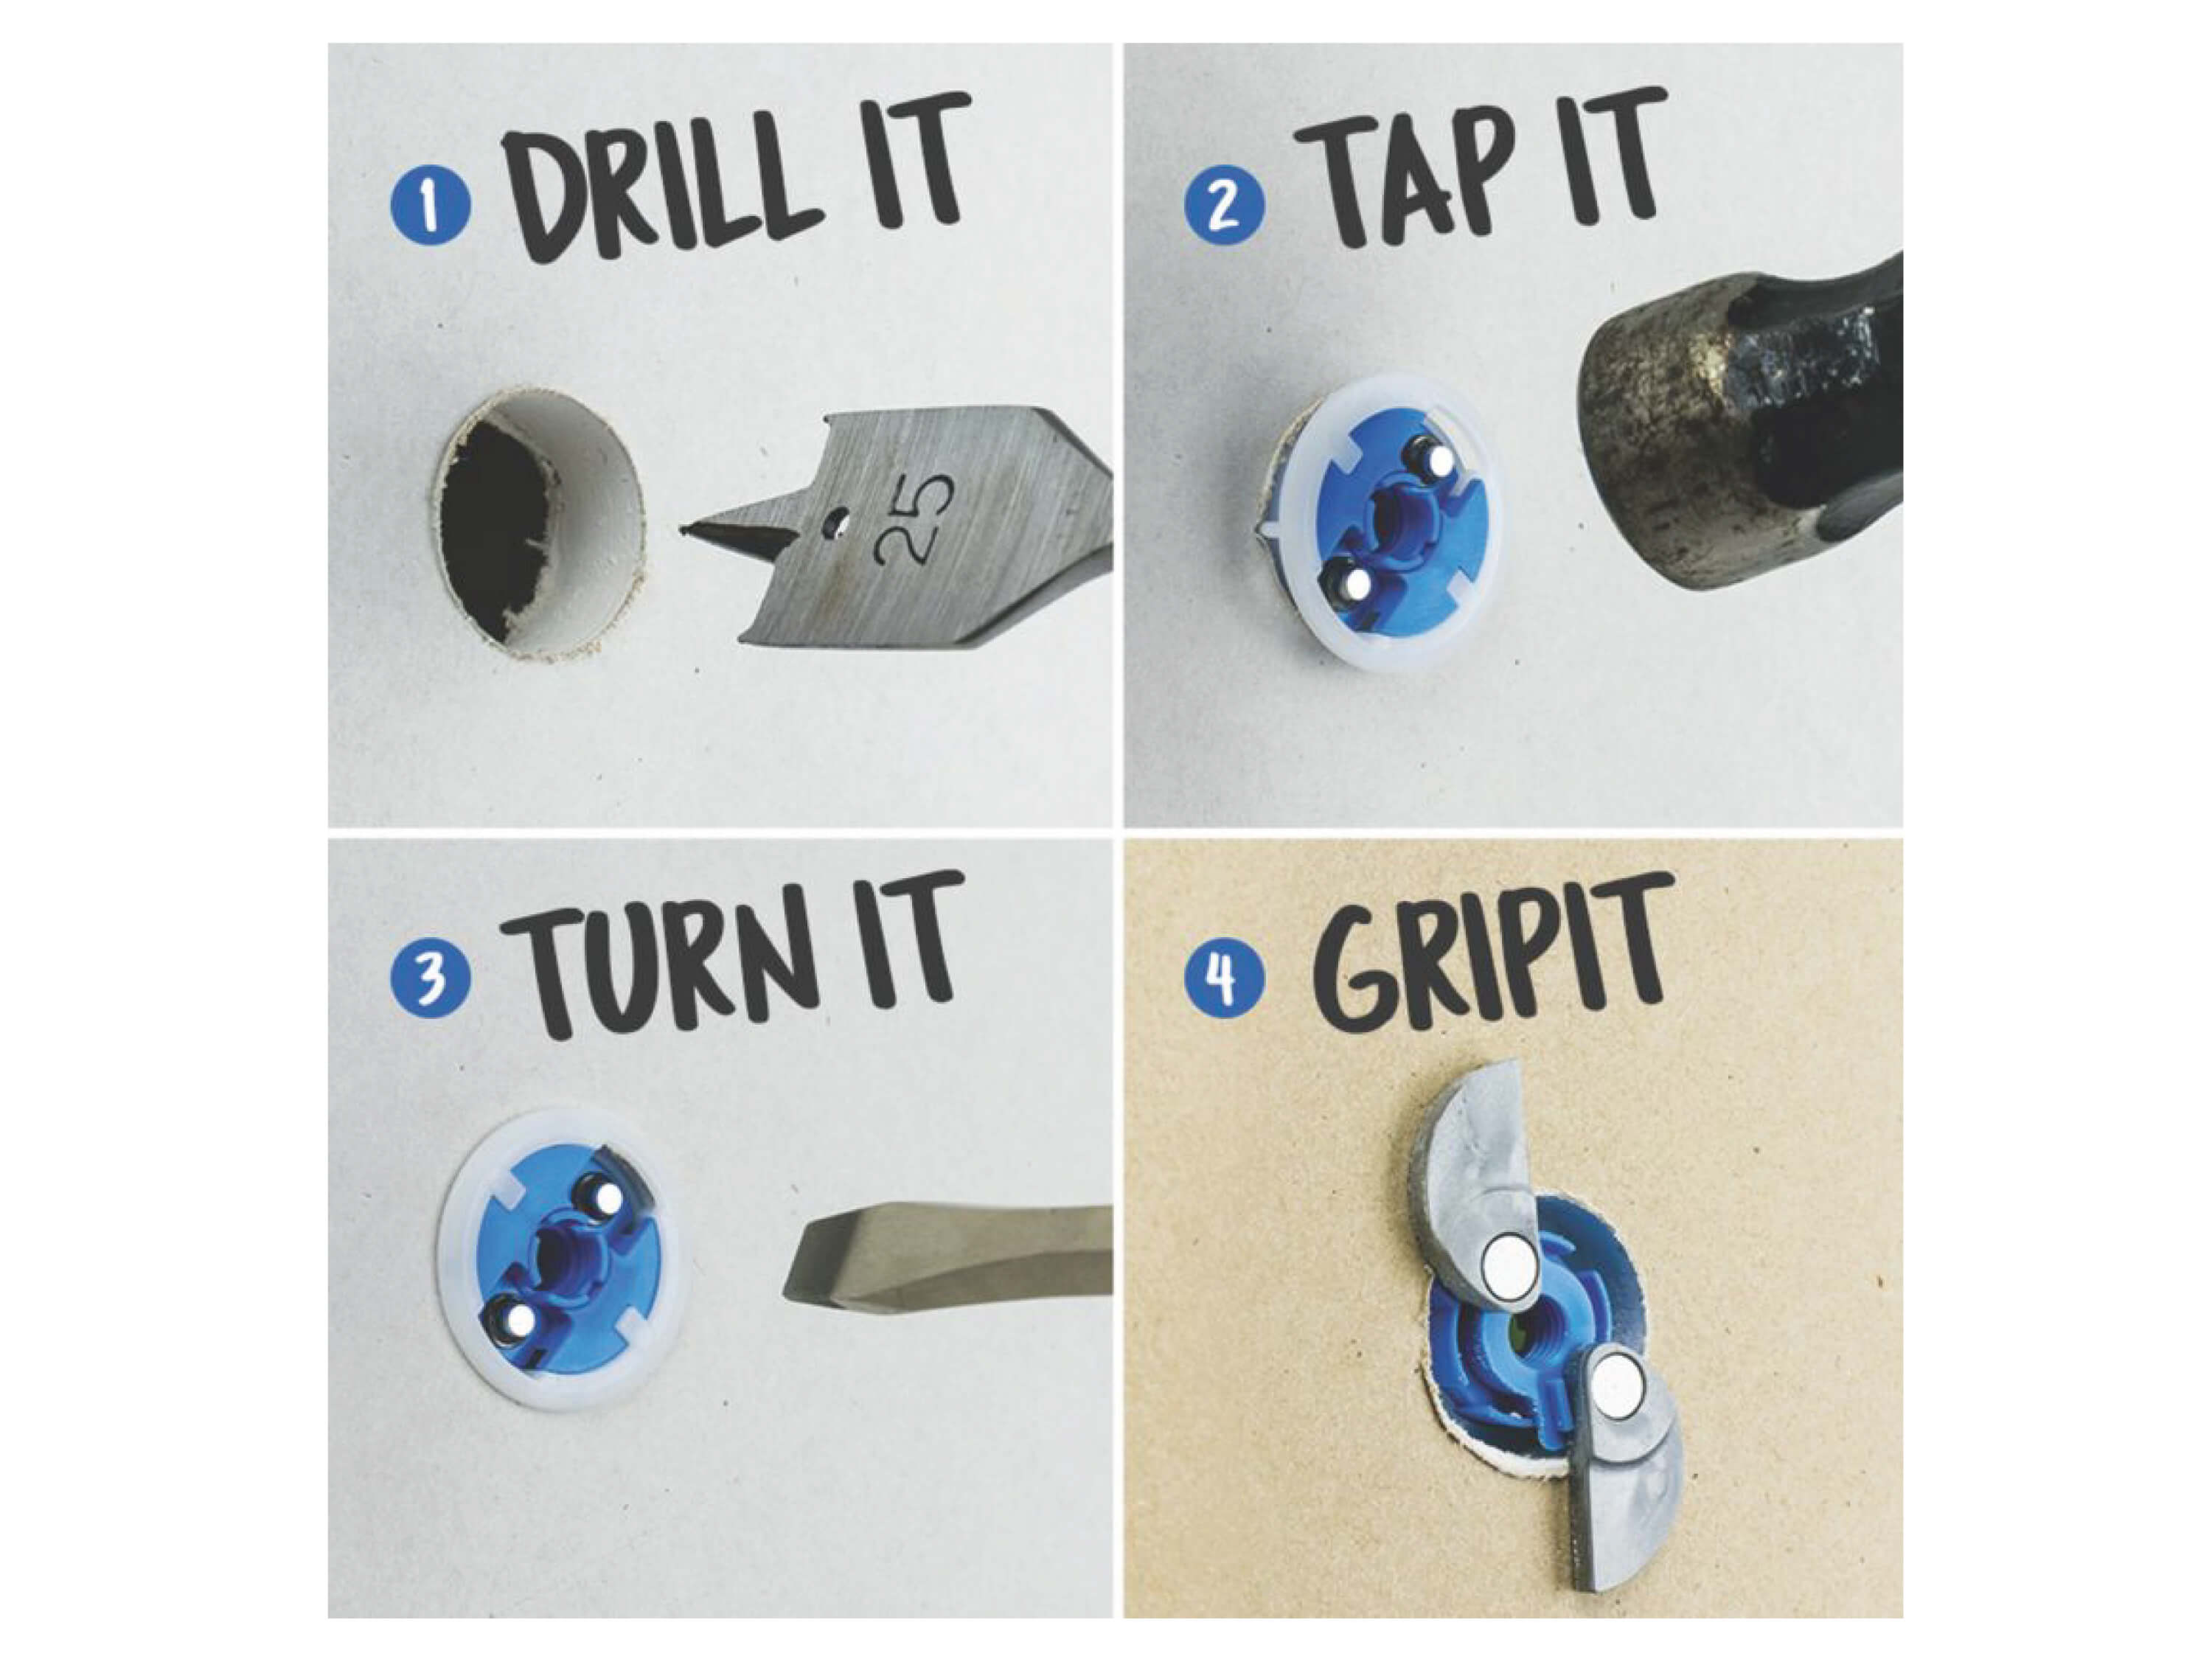 Grip It - NEW Heavy Duty Plasterboard Fixings, Grip It Fixings - New